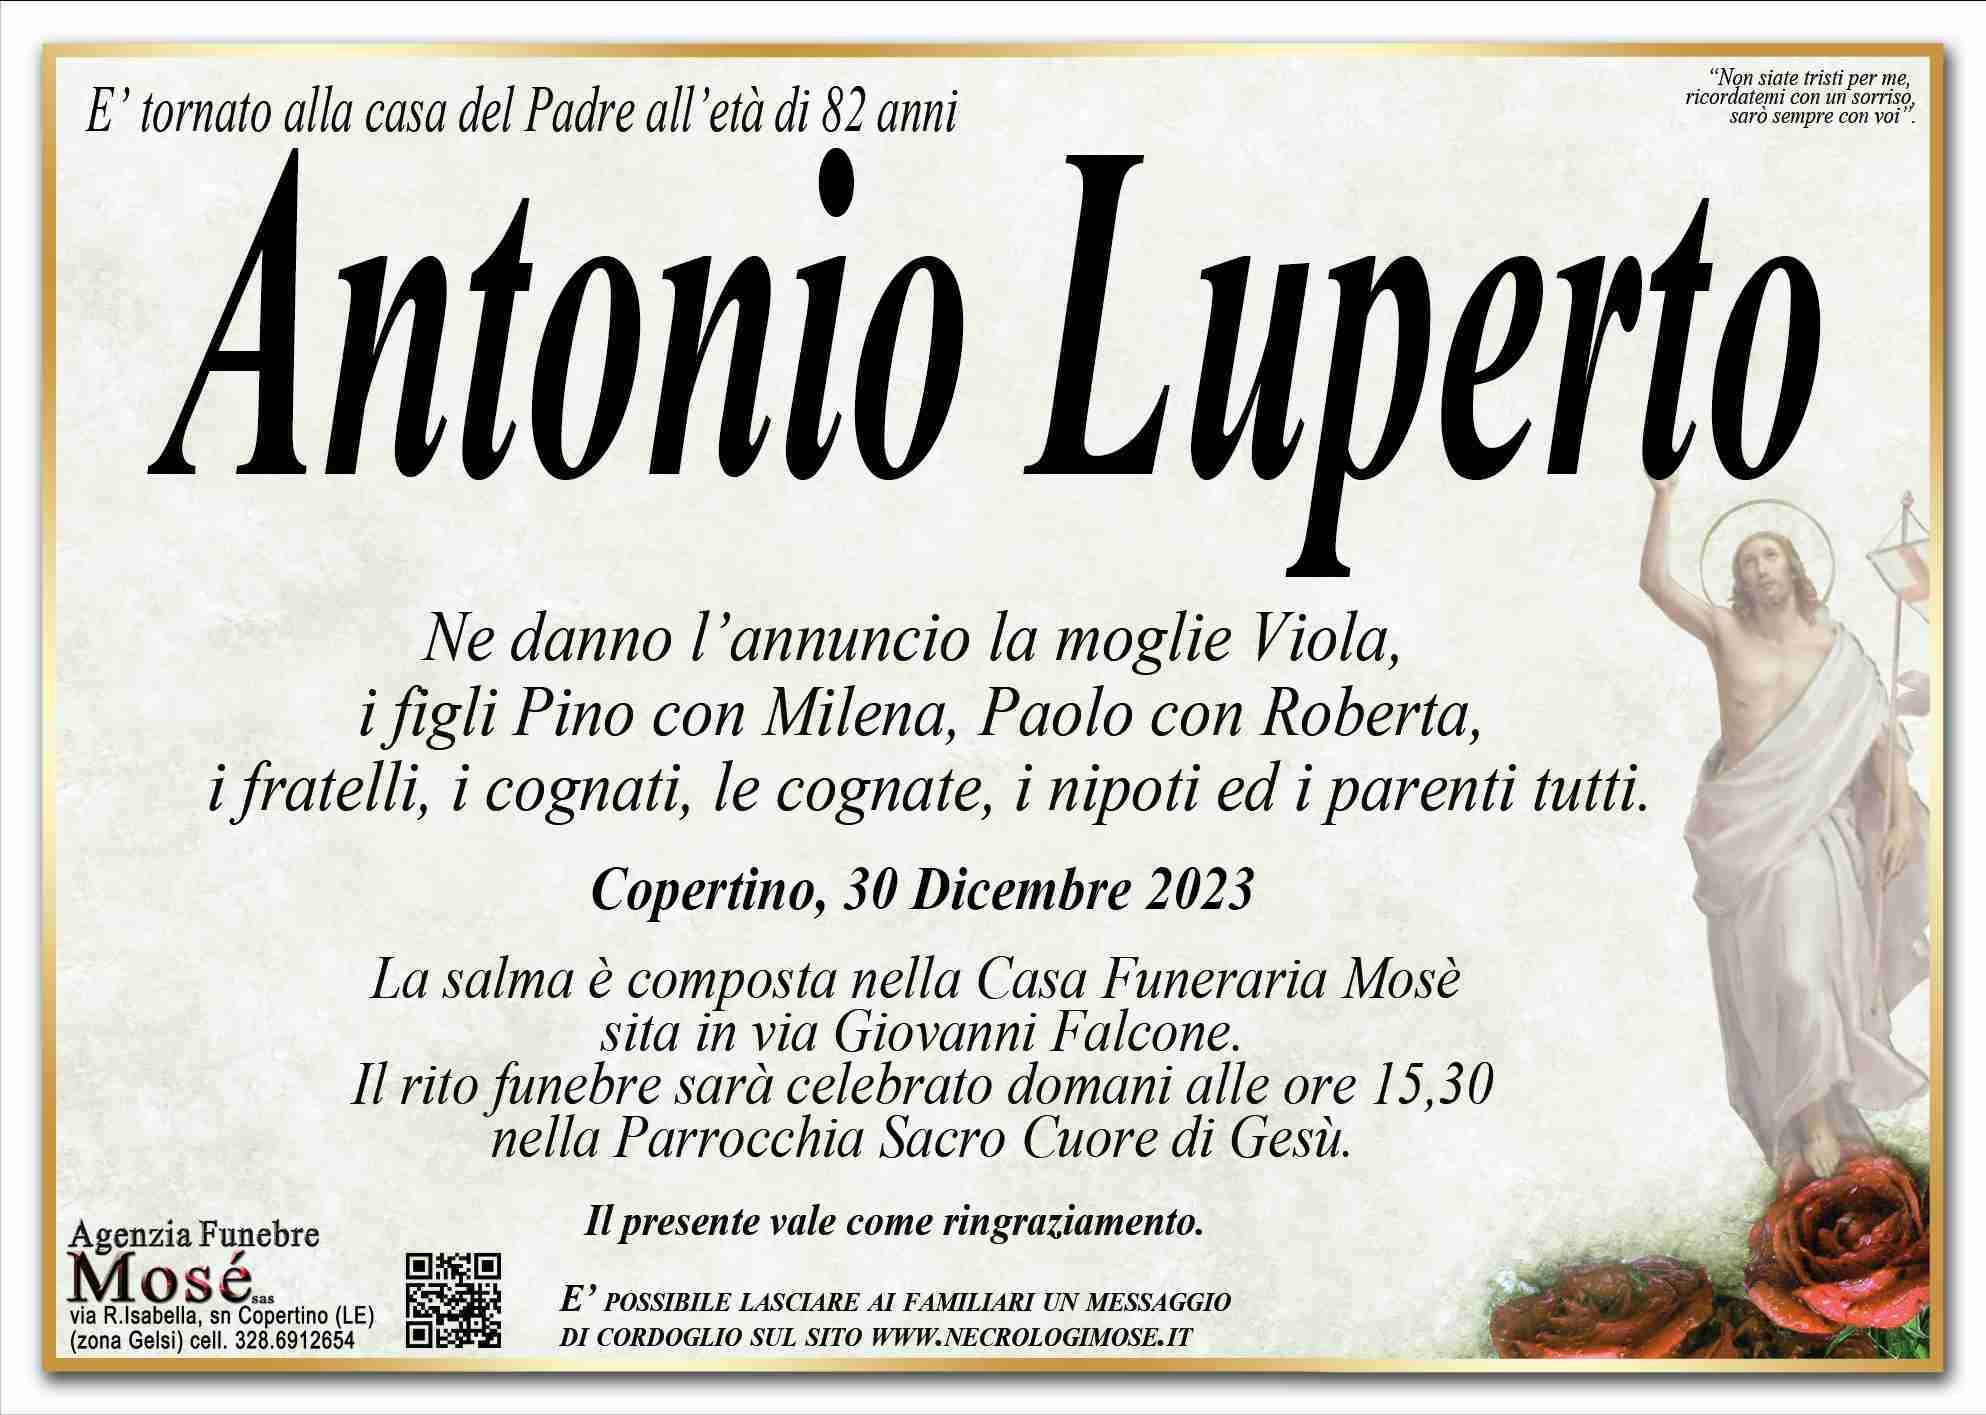 Luperto Antonio